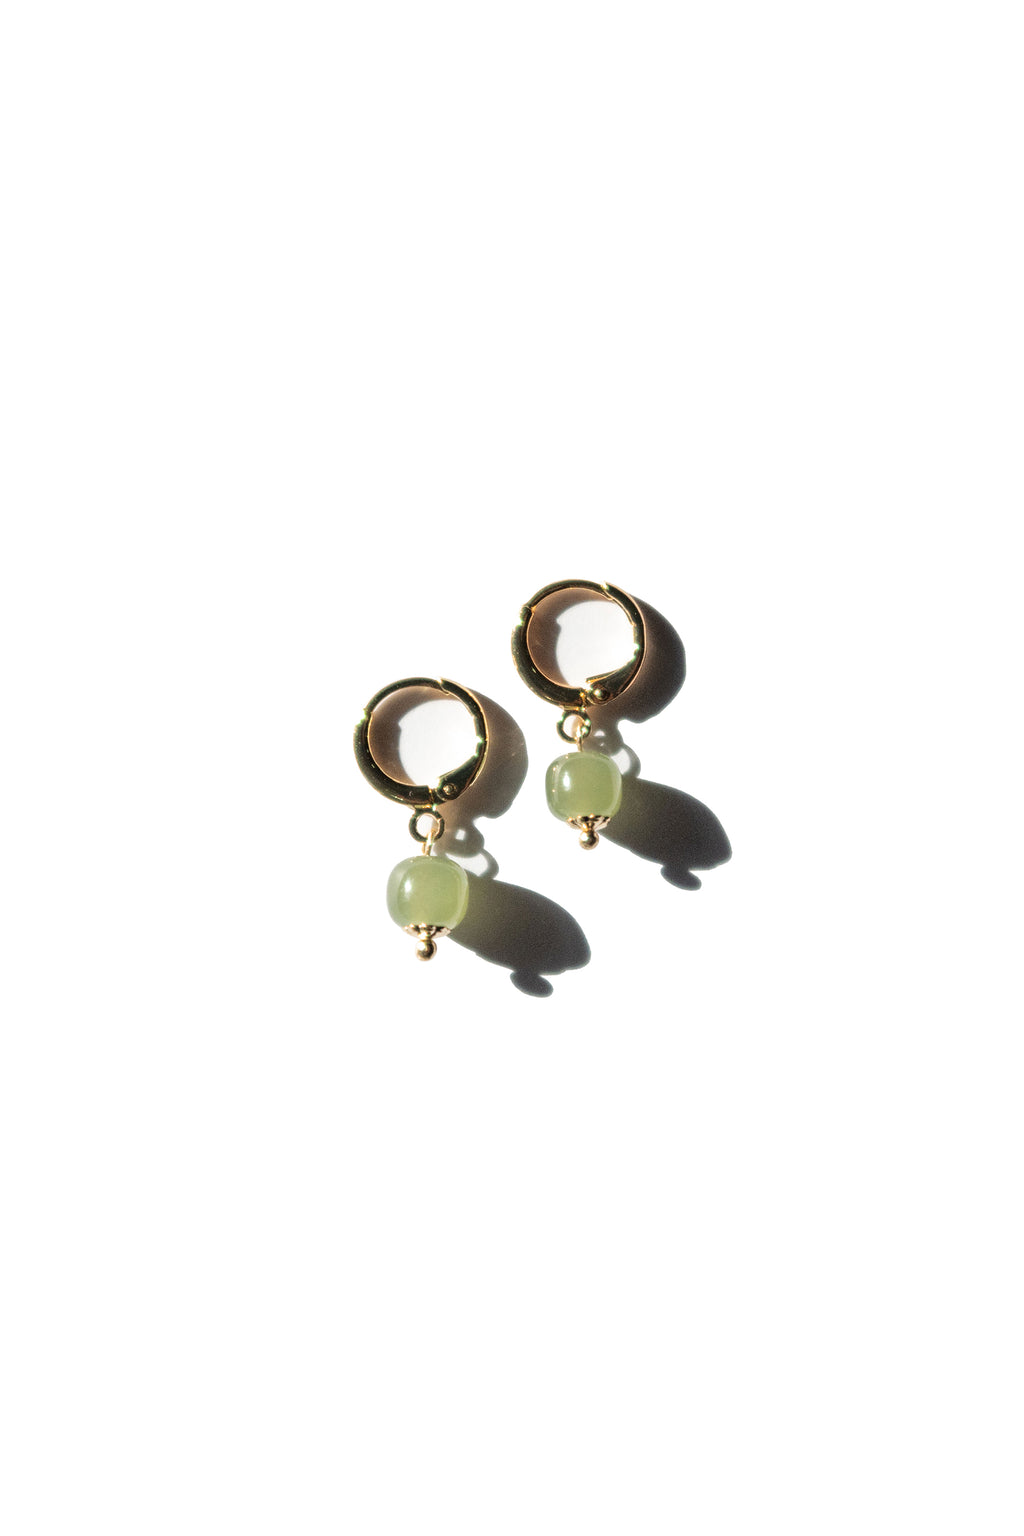 seree-berry-earrings-small-hoop-with-green-jade-bead-earrings